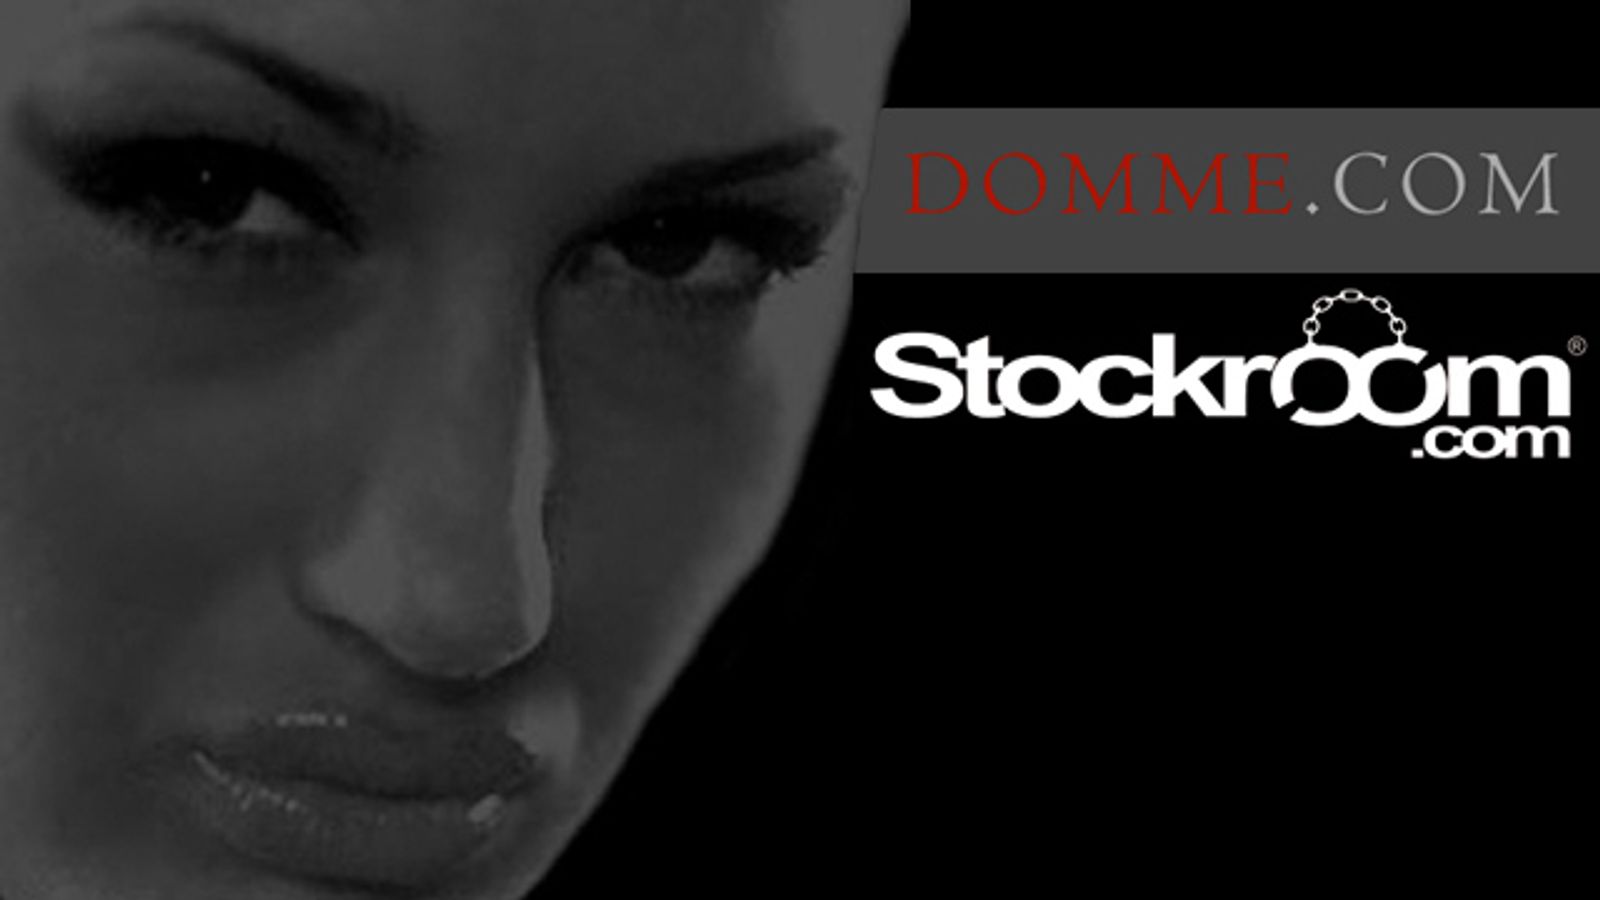 Stockroom Acquires Domme.com